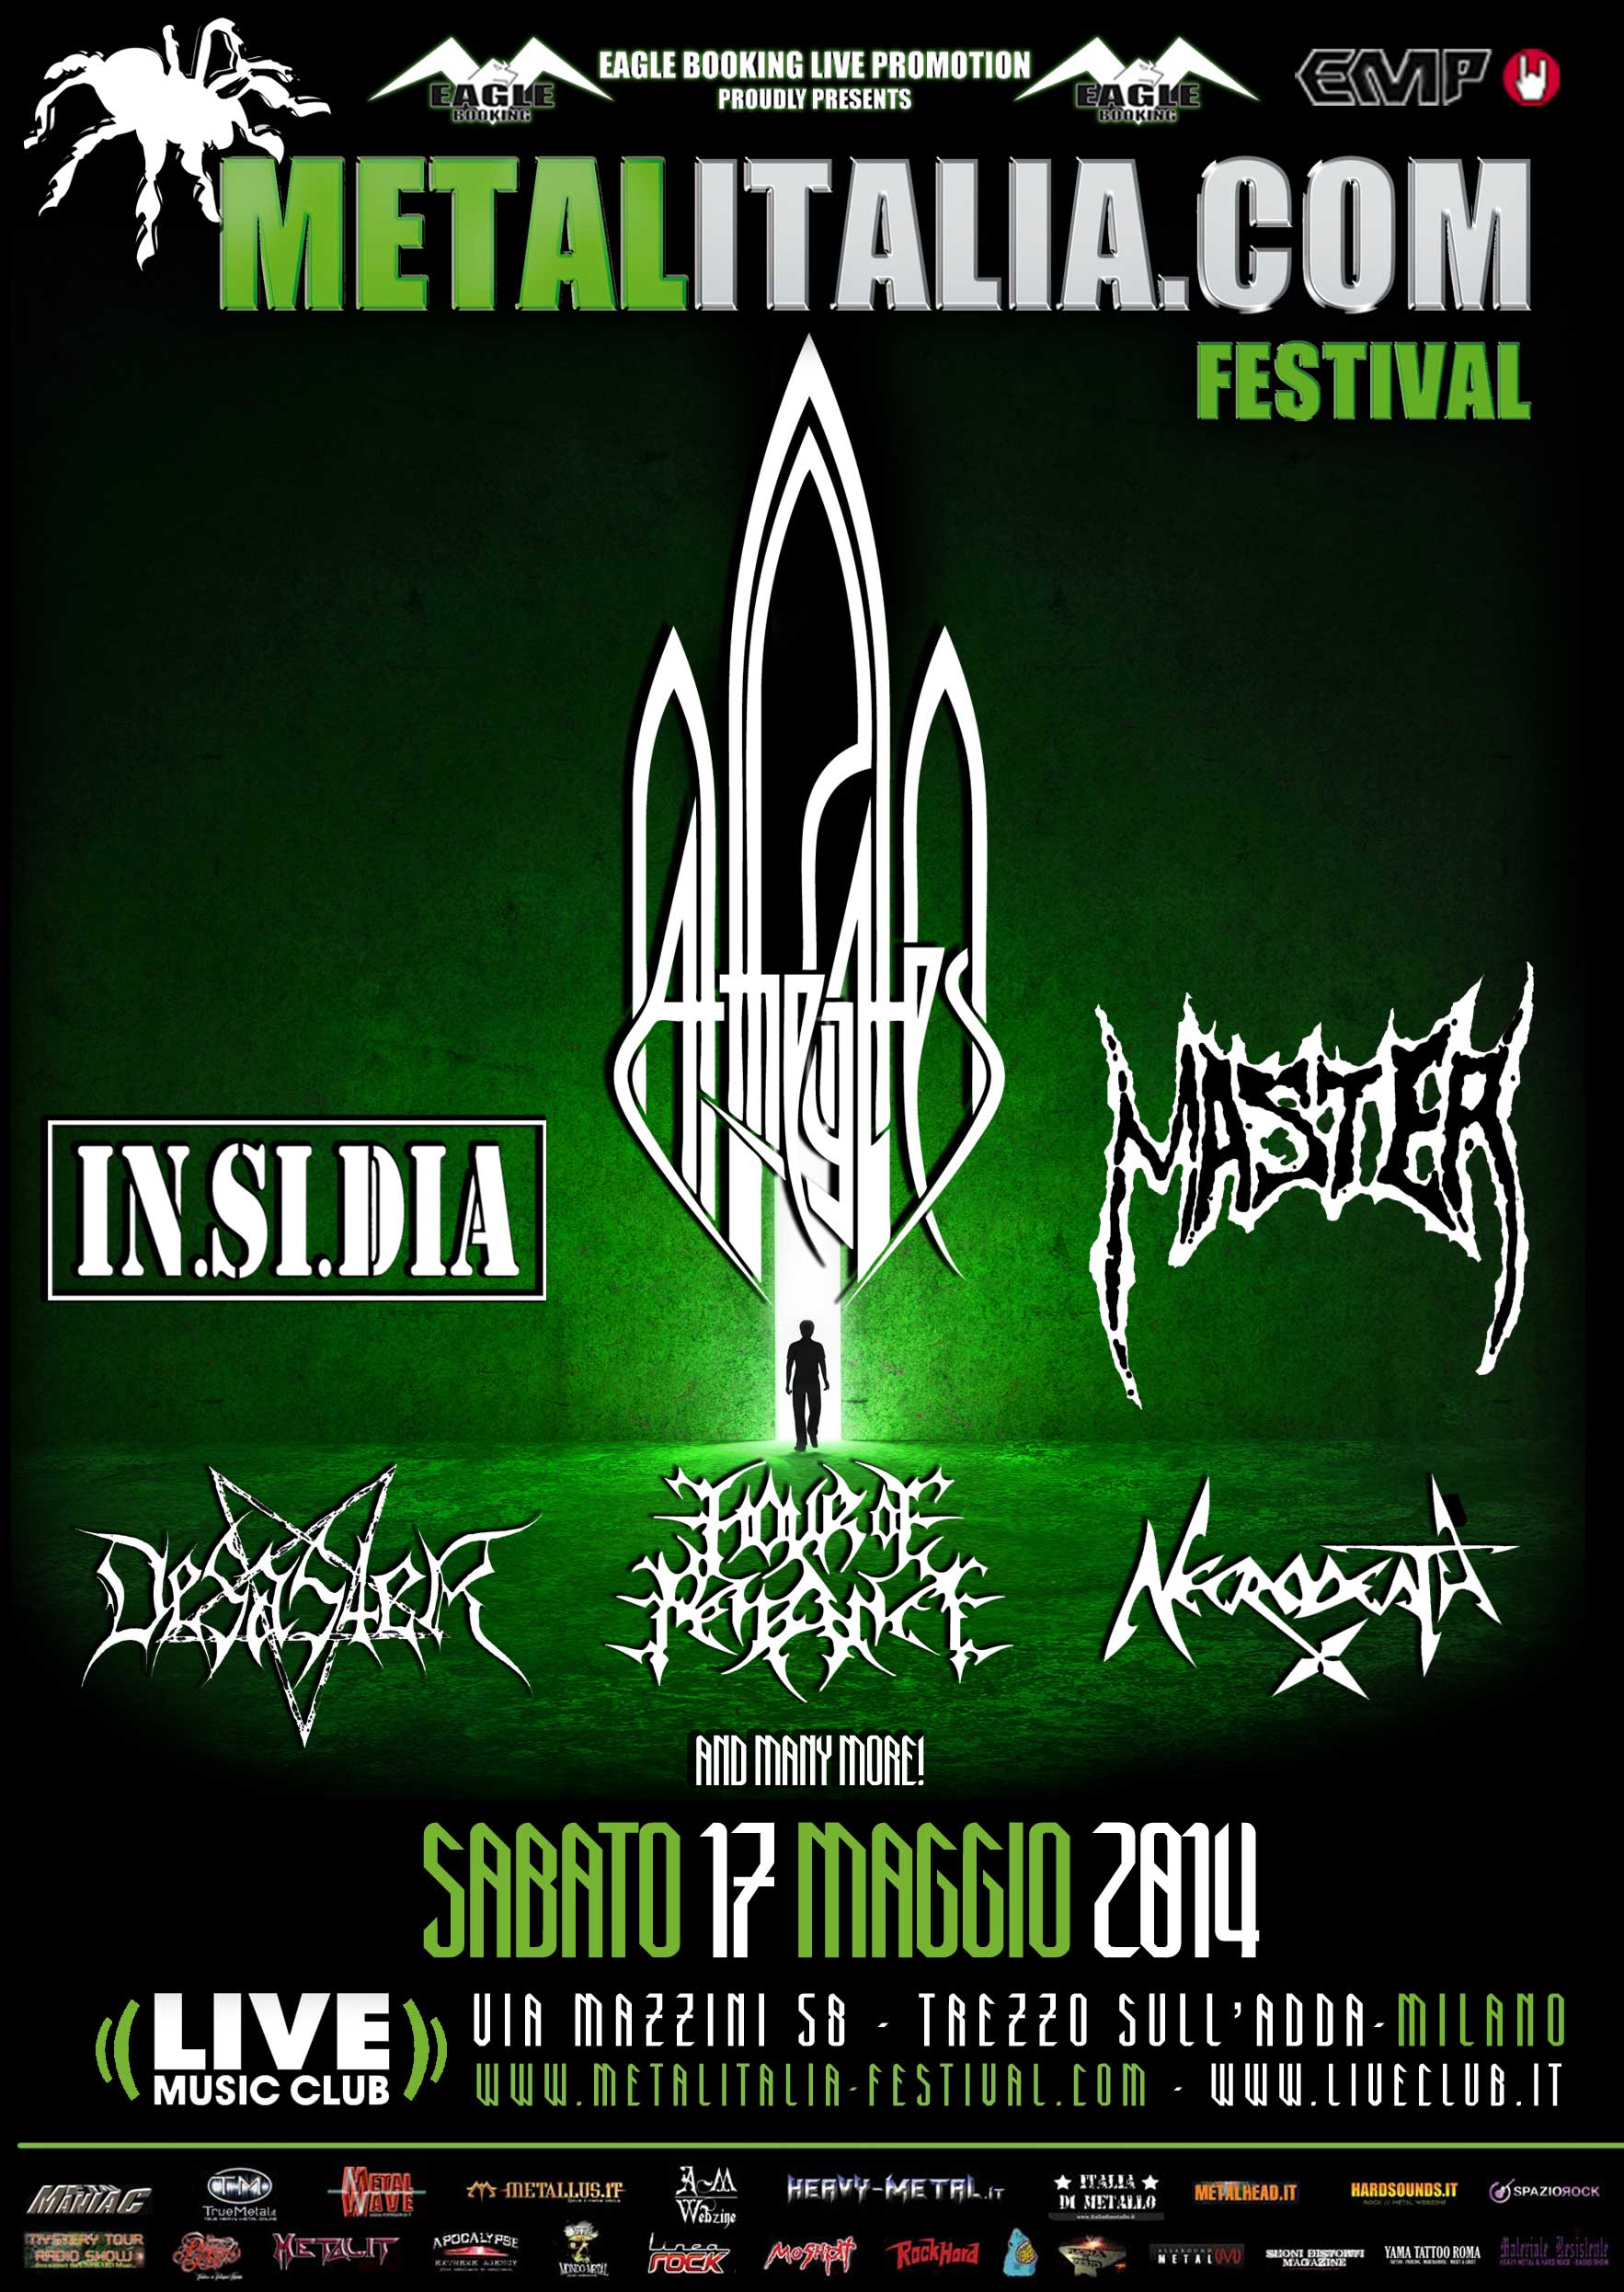 metalitalia festival 2014 - locandina secondo annuncio